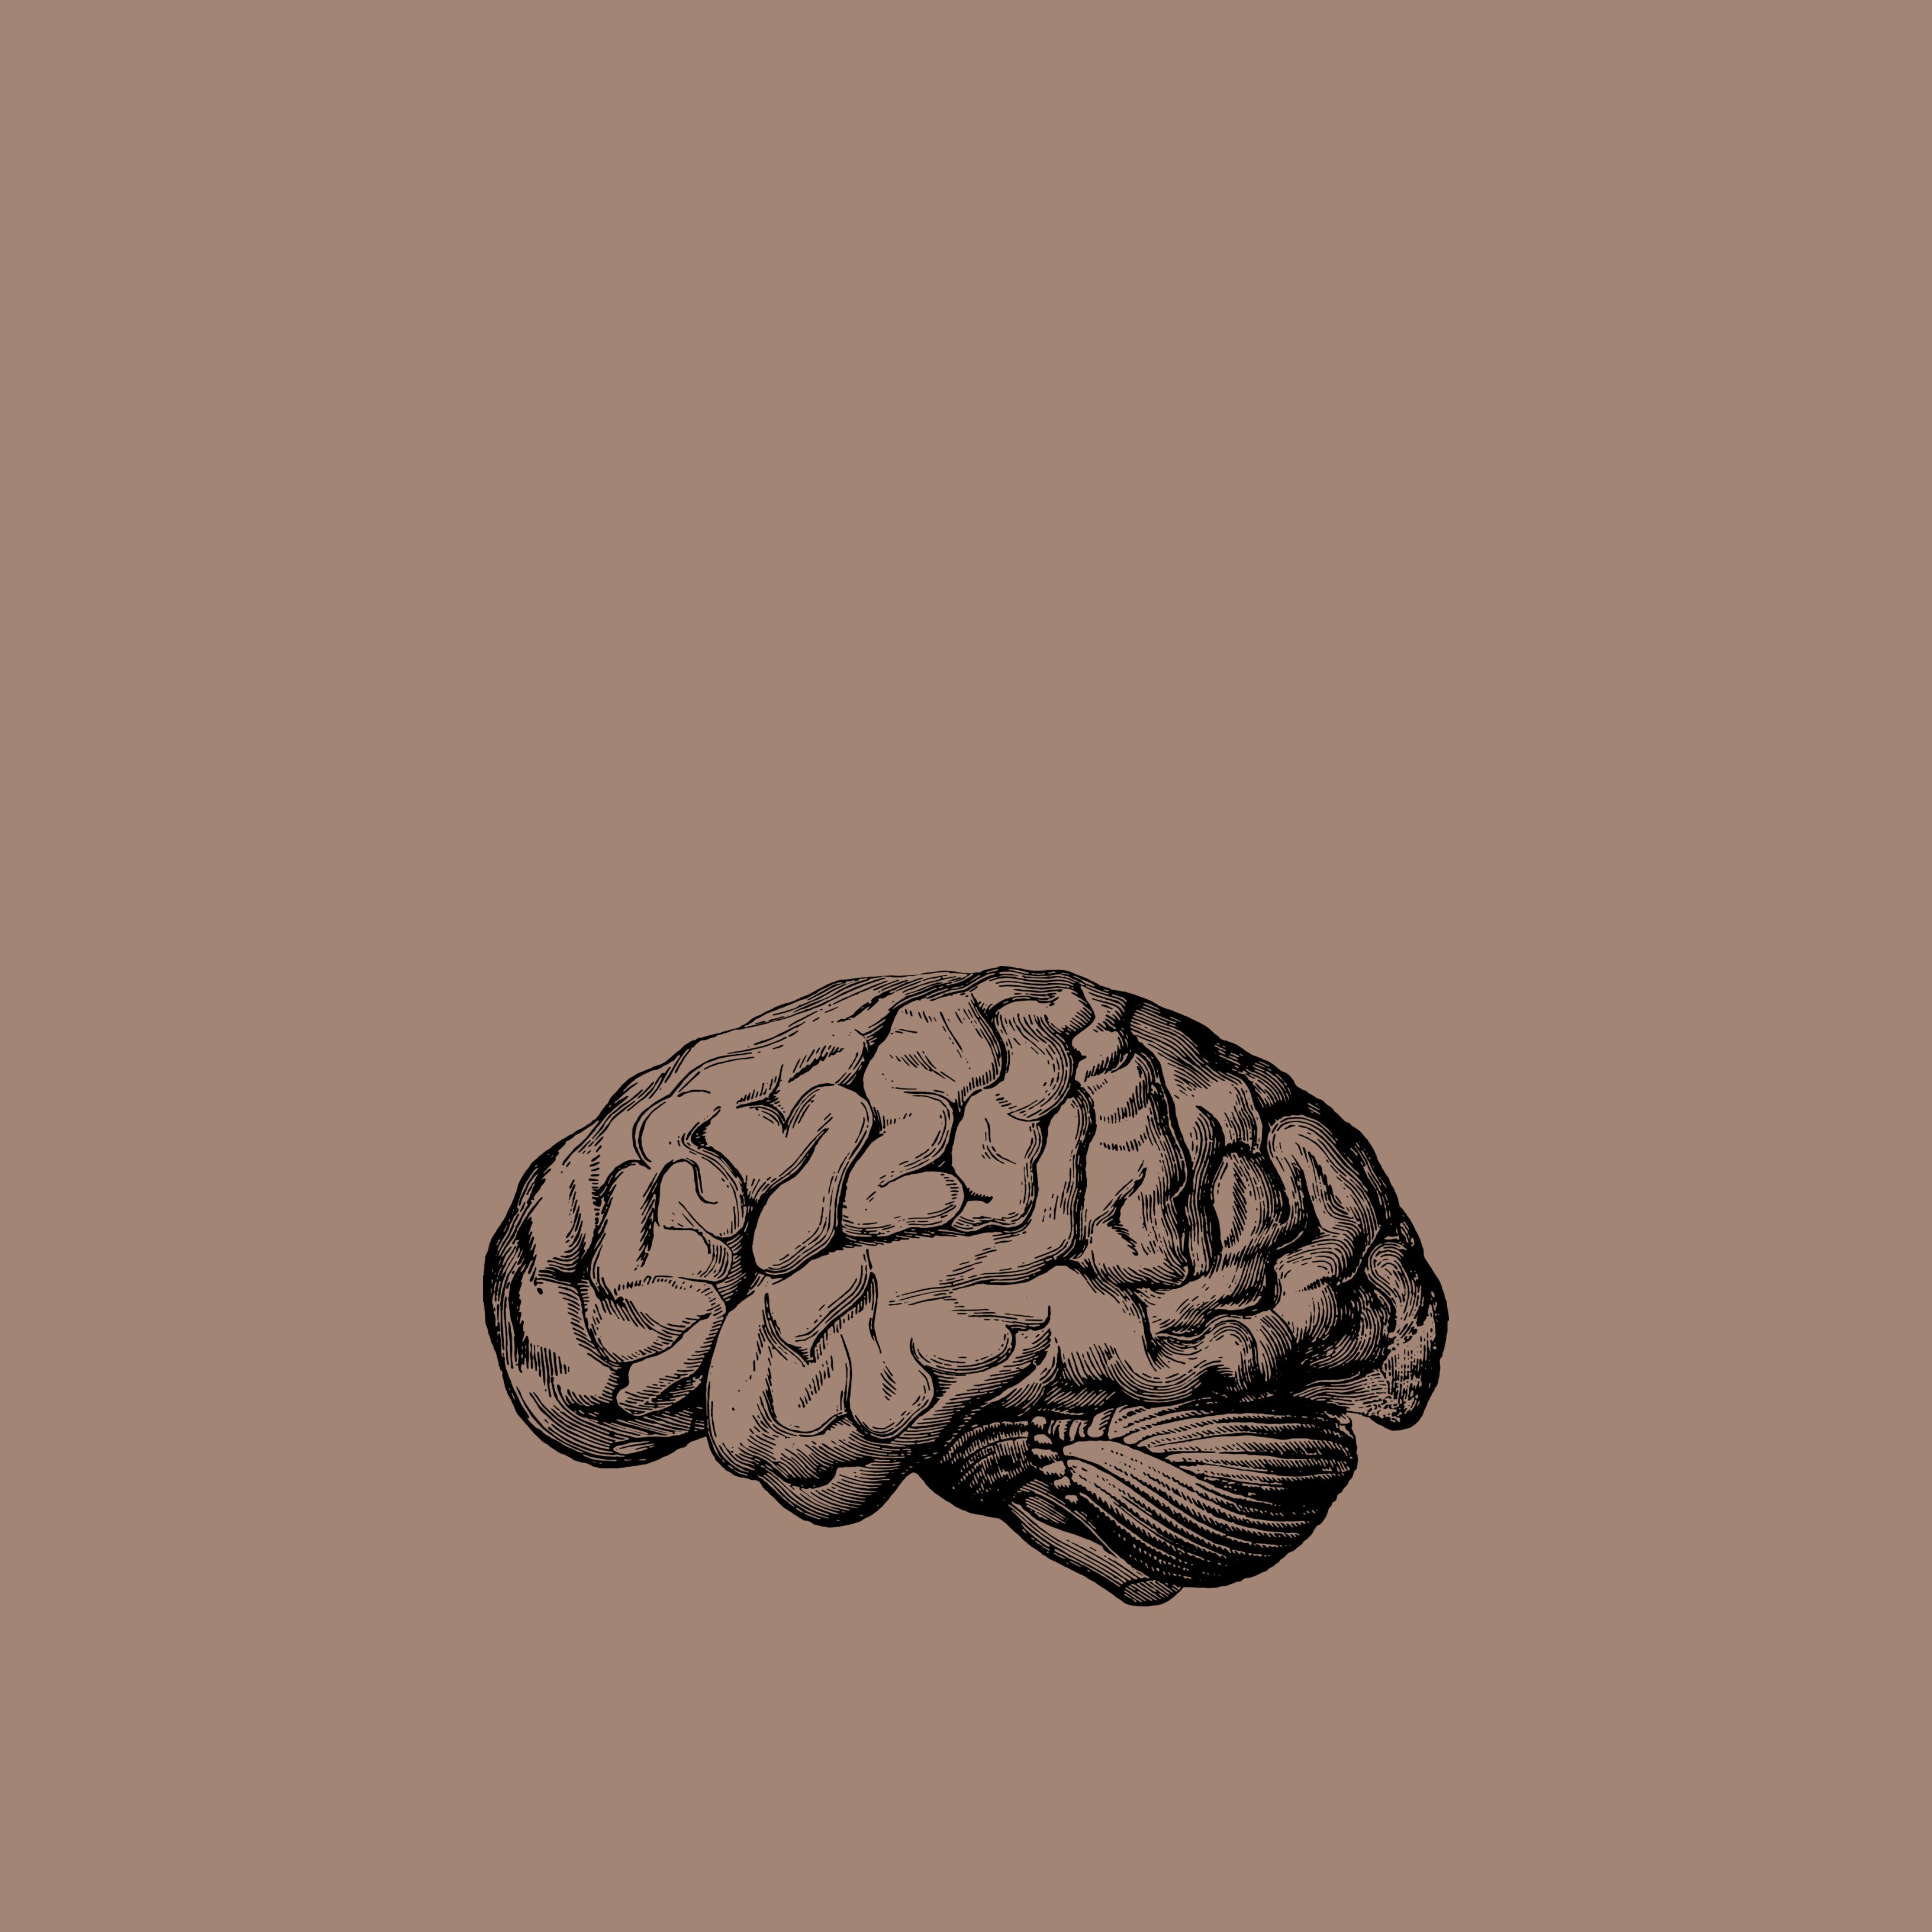 Les lesions cerebrals naturals que poden conduir a la demència